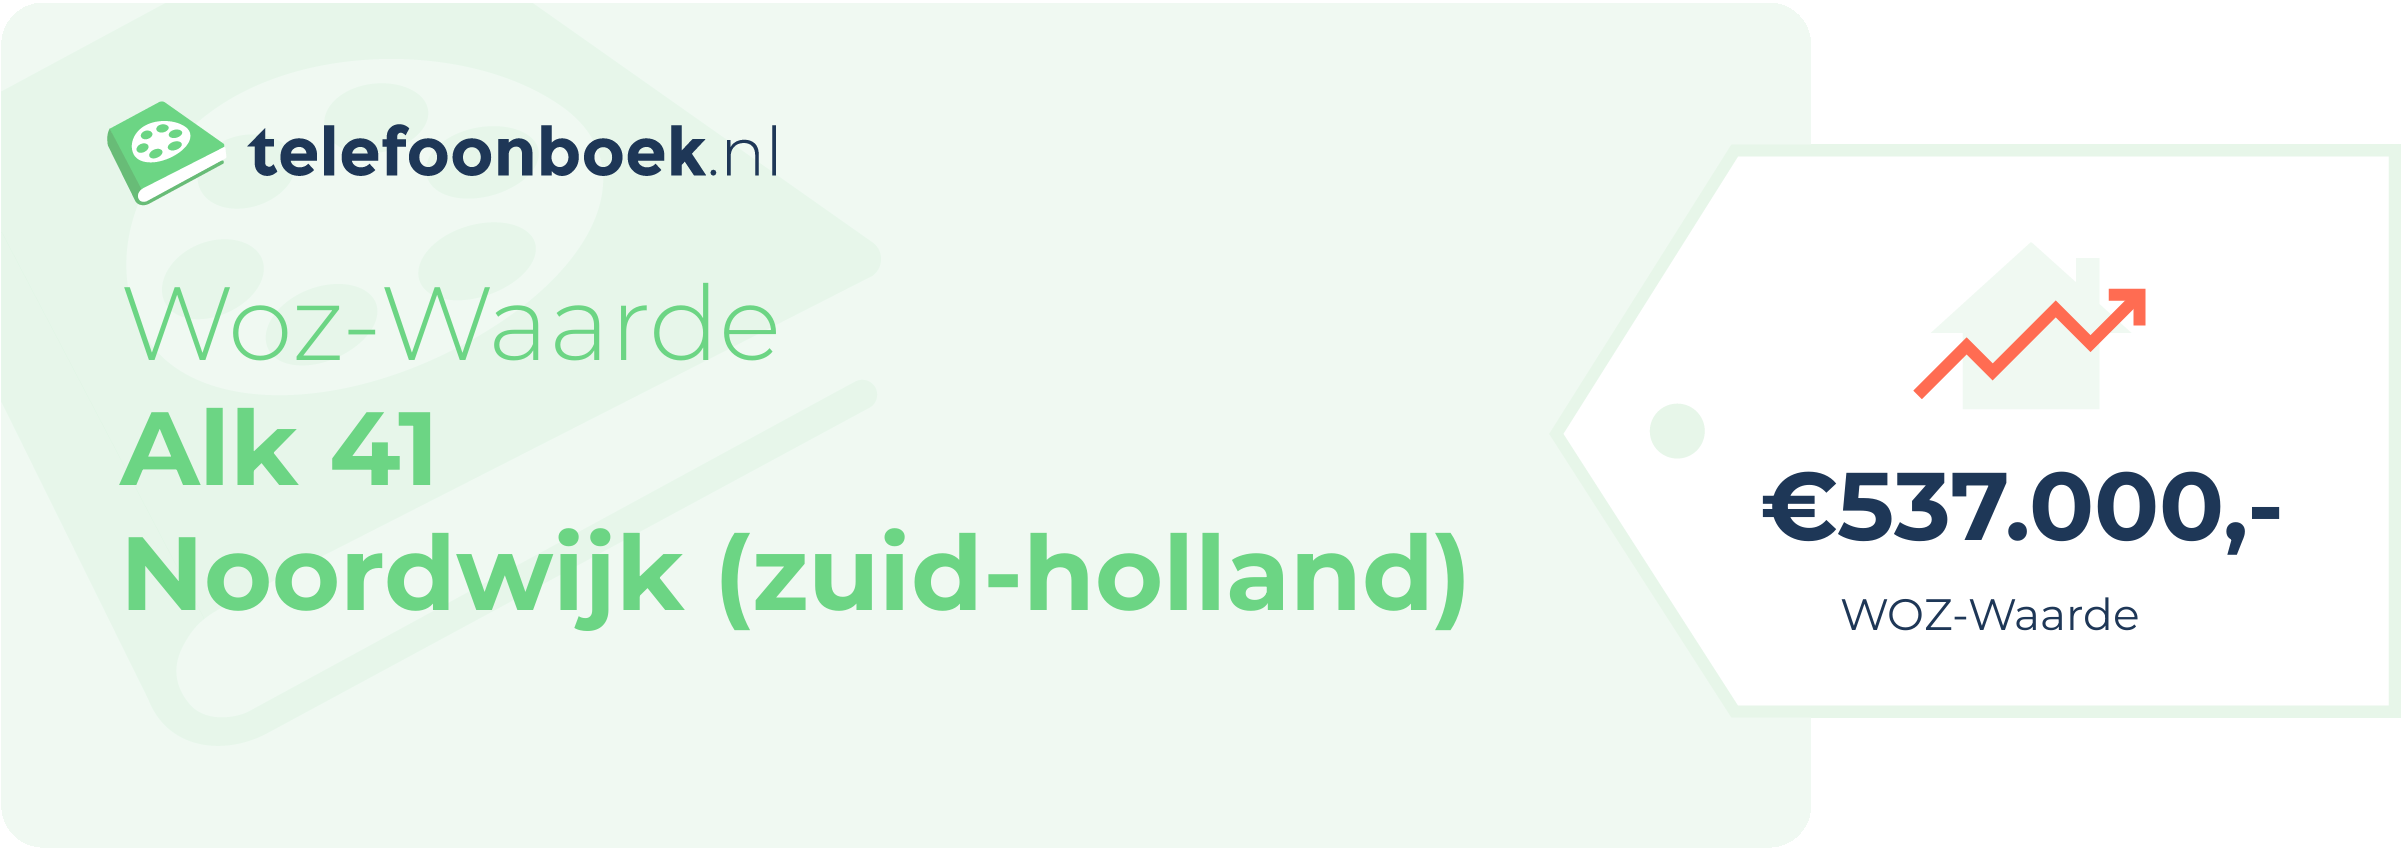 WOZ-waarde Alk 41 Noordwijk (Zuid-Holland)